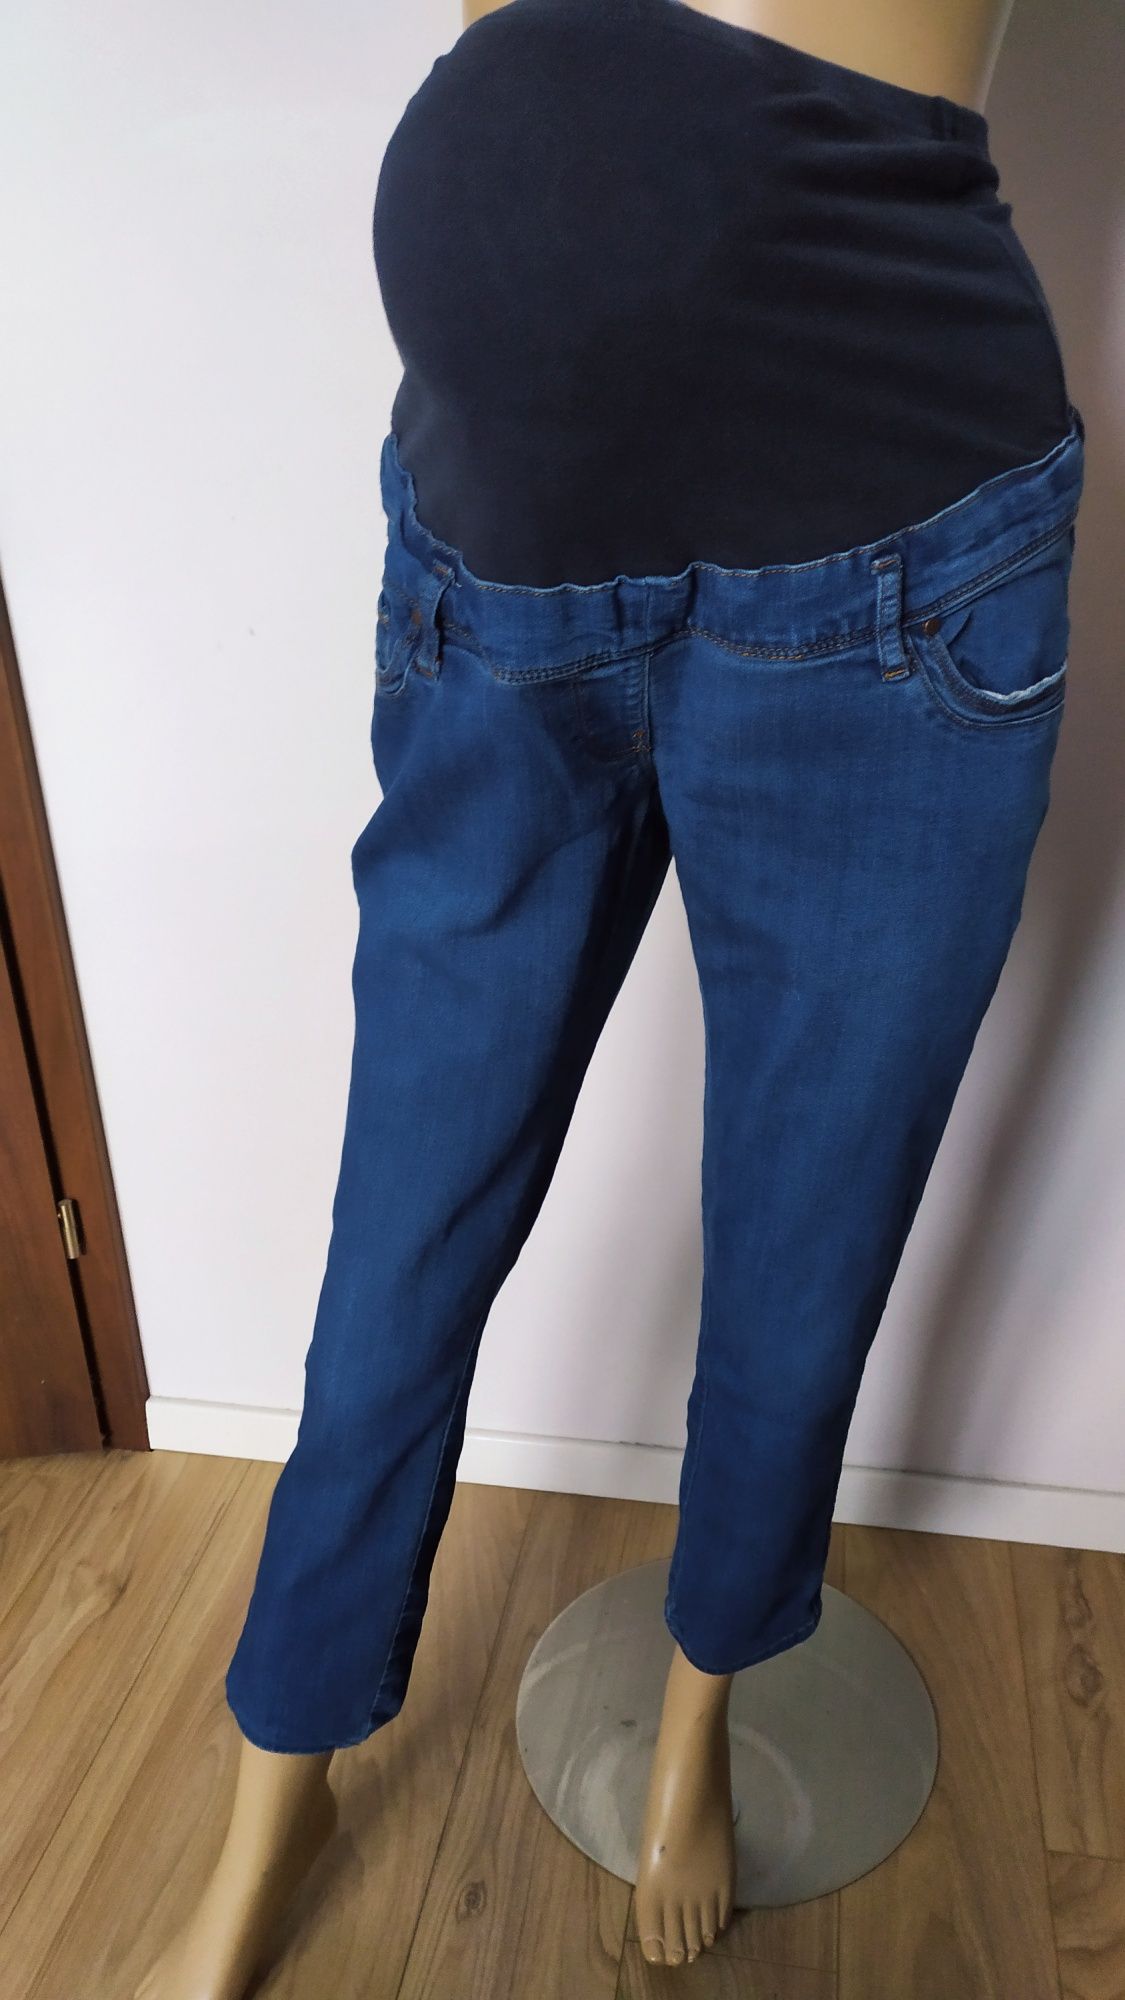 SG spodnie ciążowe 38 , M , jeansy ciążowe 38 , M dżinsy ciążowe 38.